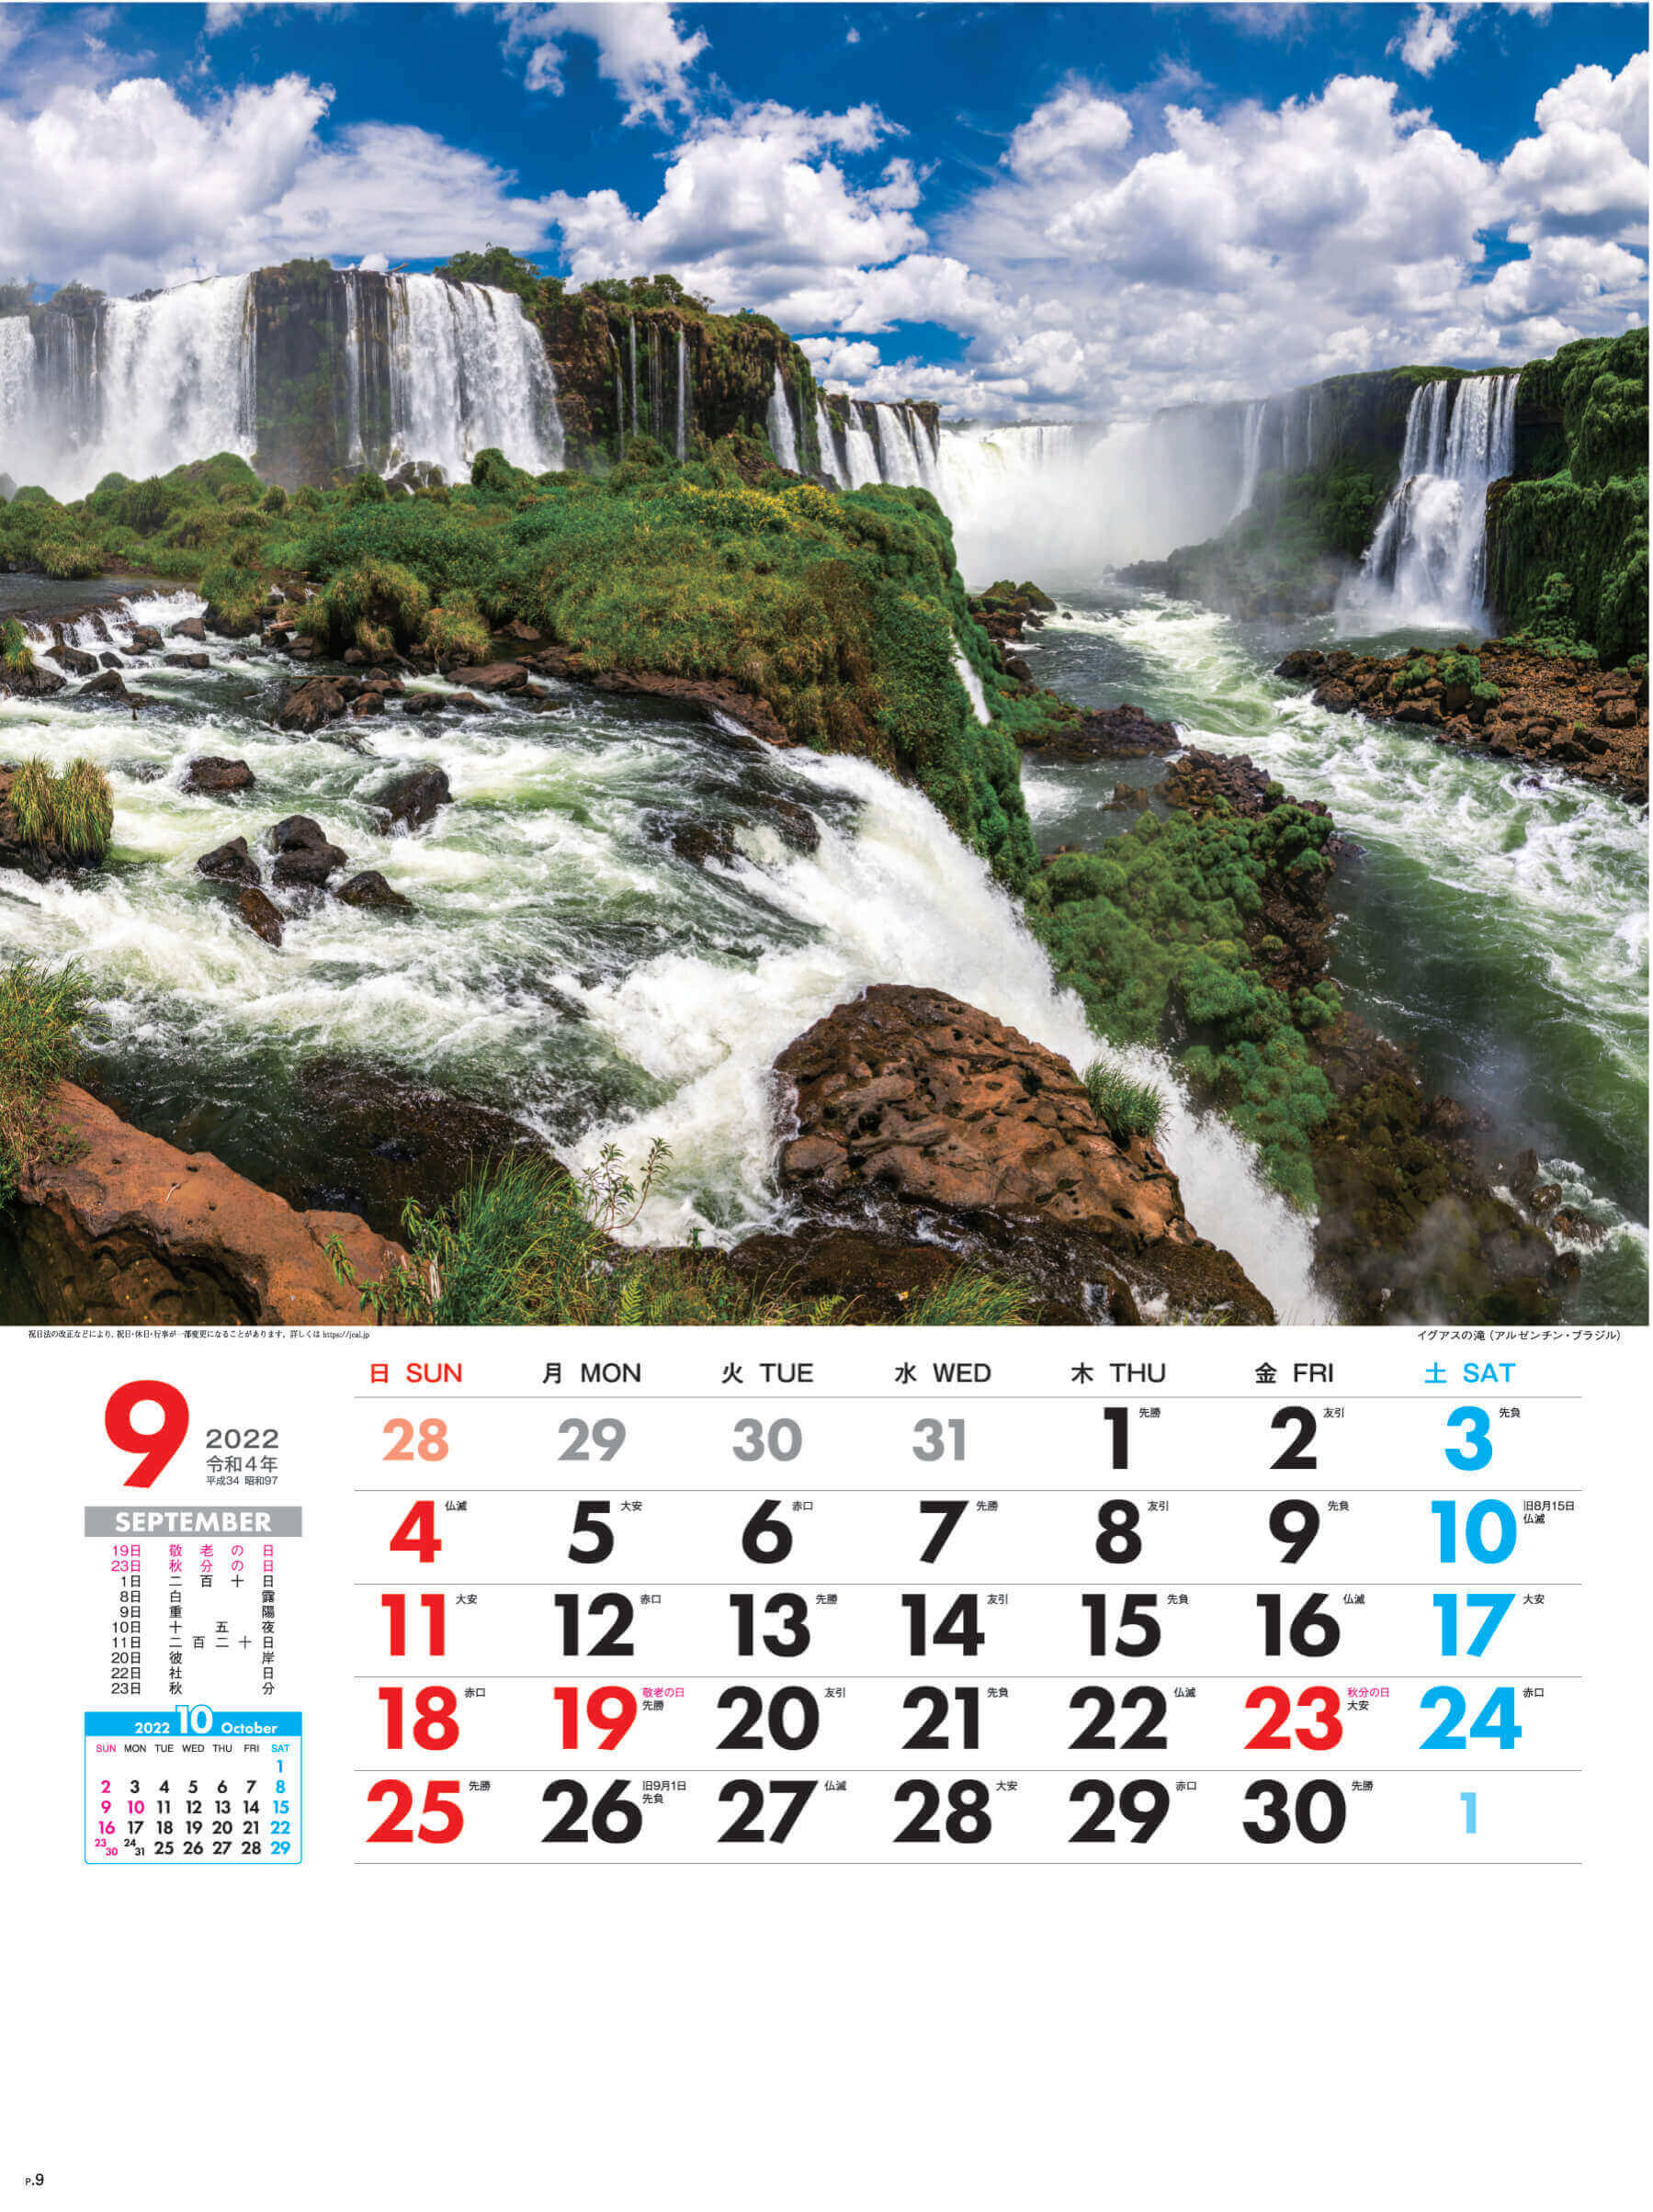 9月 イグアスの滝 アルゼンチン・ブラジル 外国風景 2022年カレンダーの画像